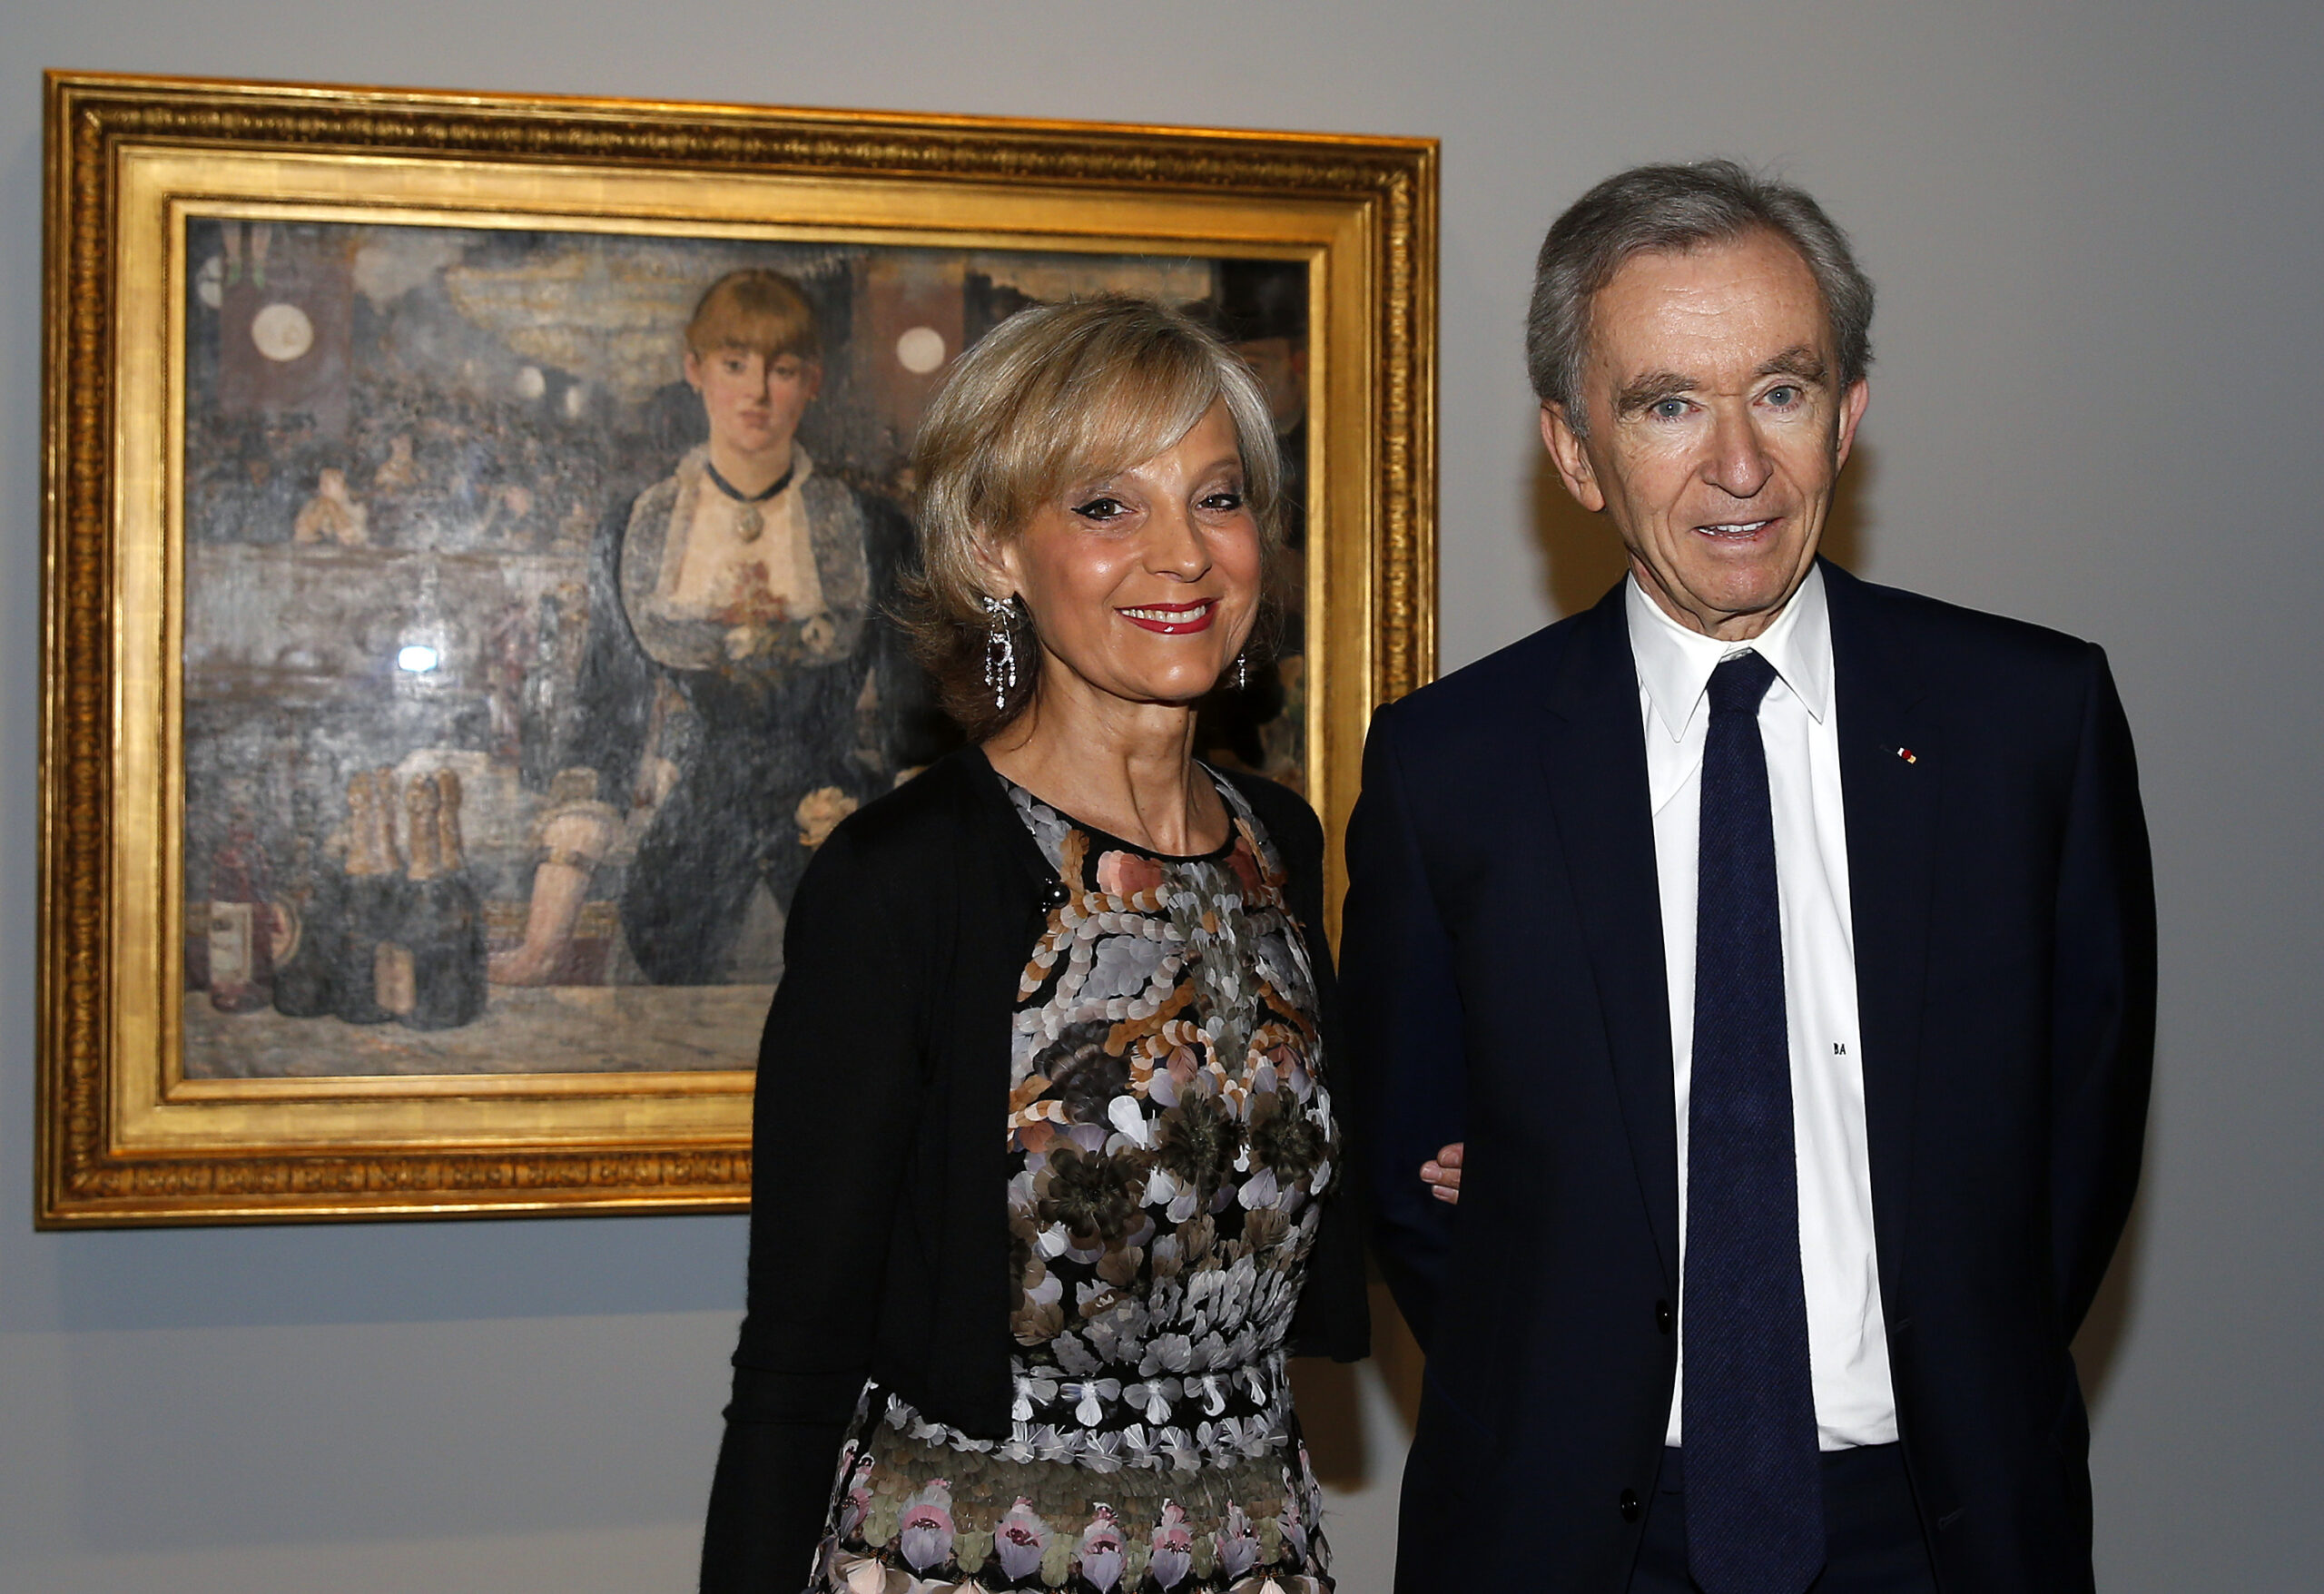 Arnault Bernard trägt einen Anzug und steht neben seiner Frau vor einem historischen Bild